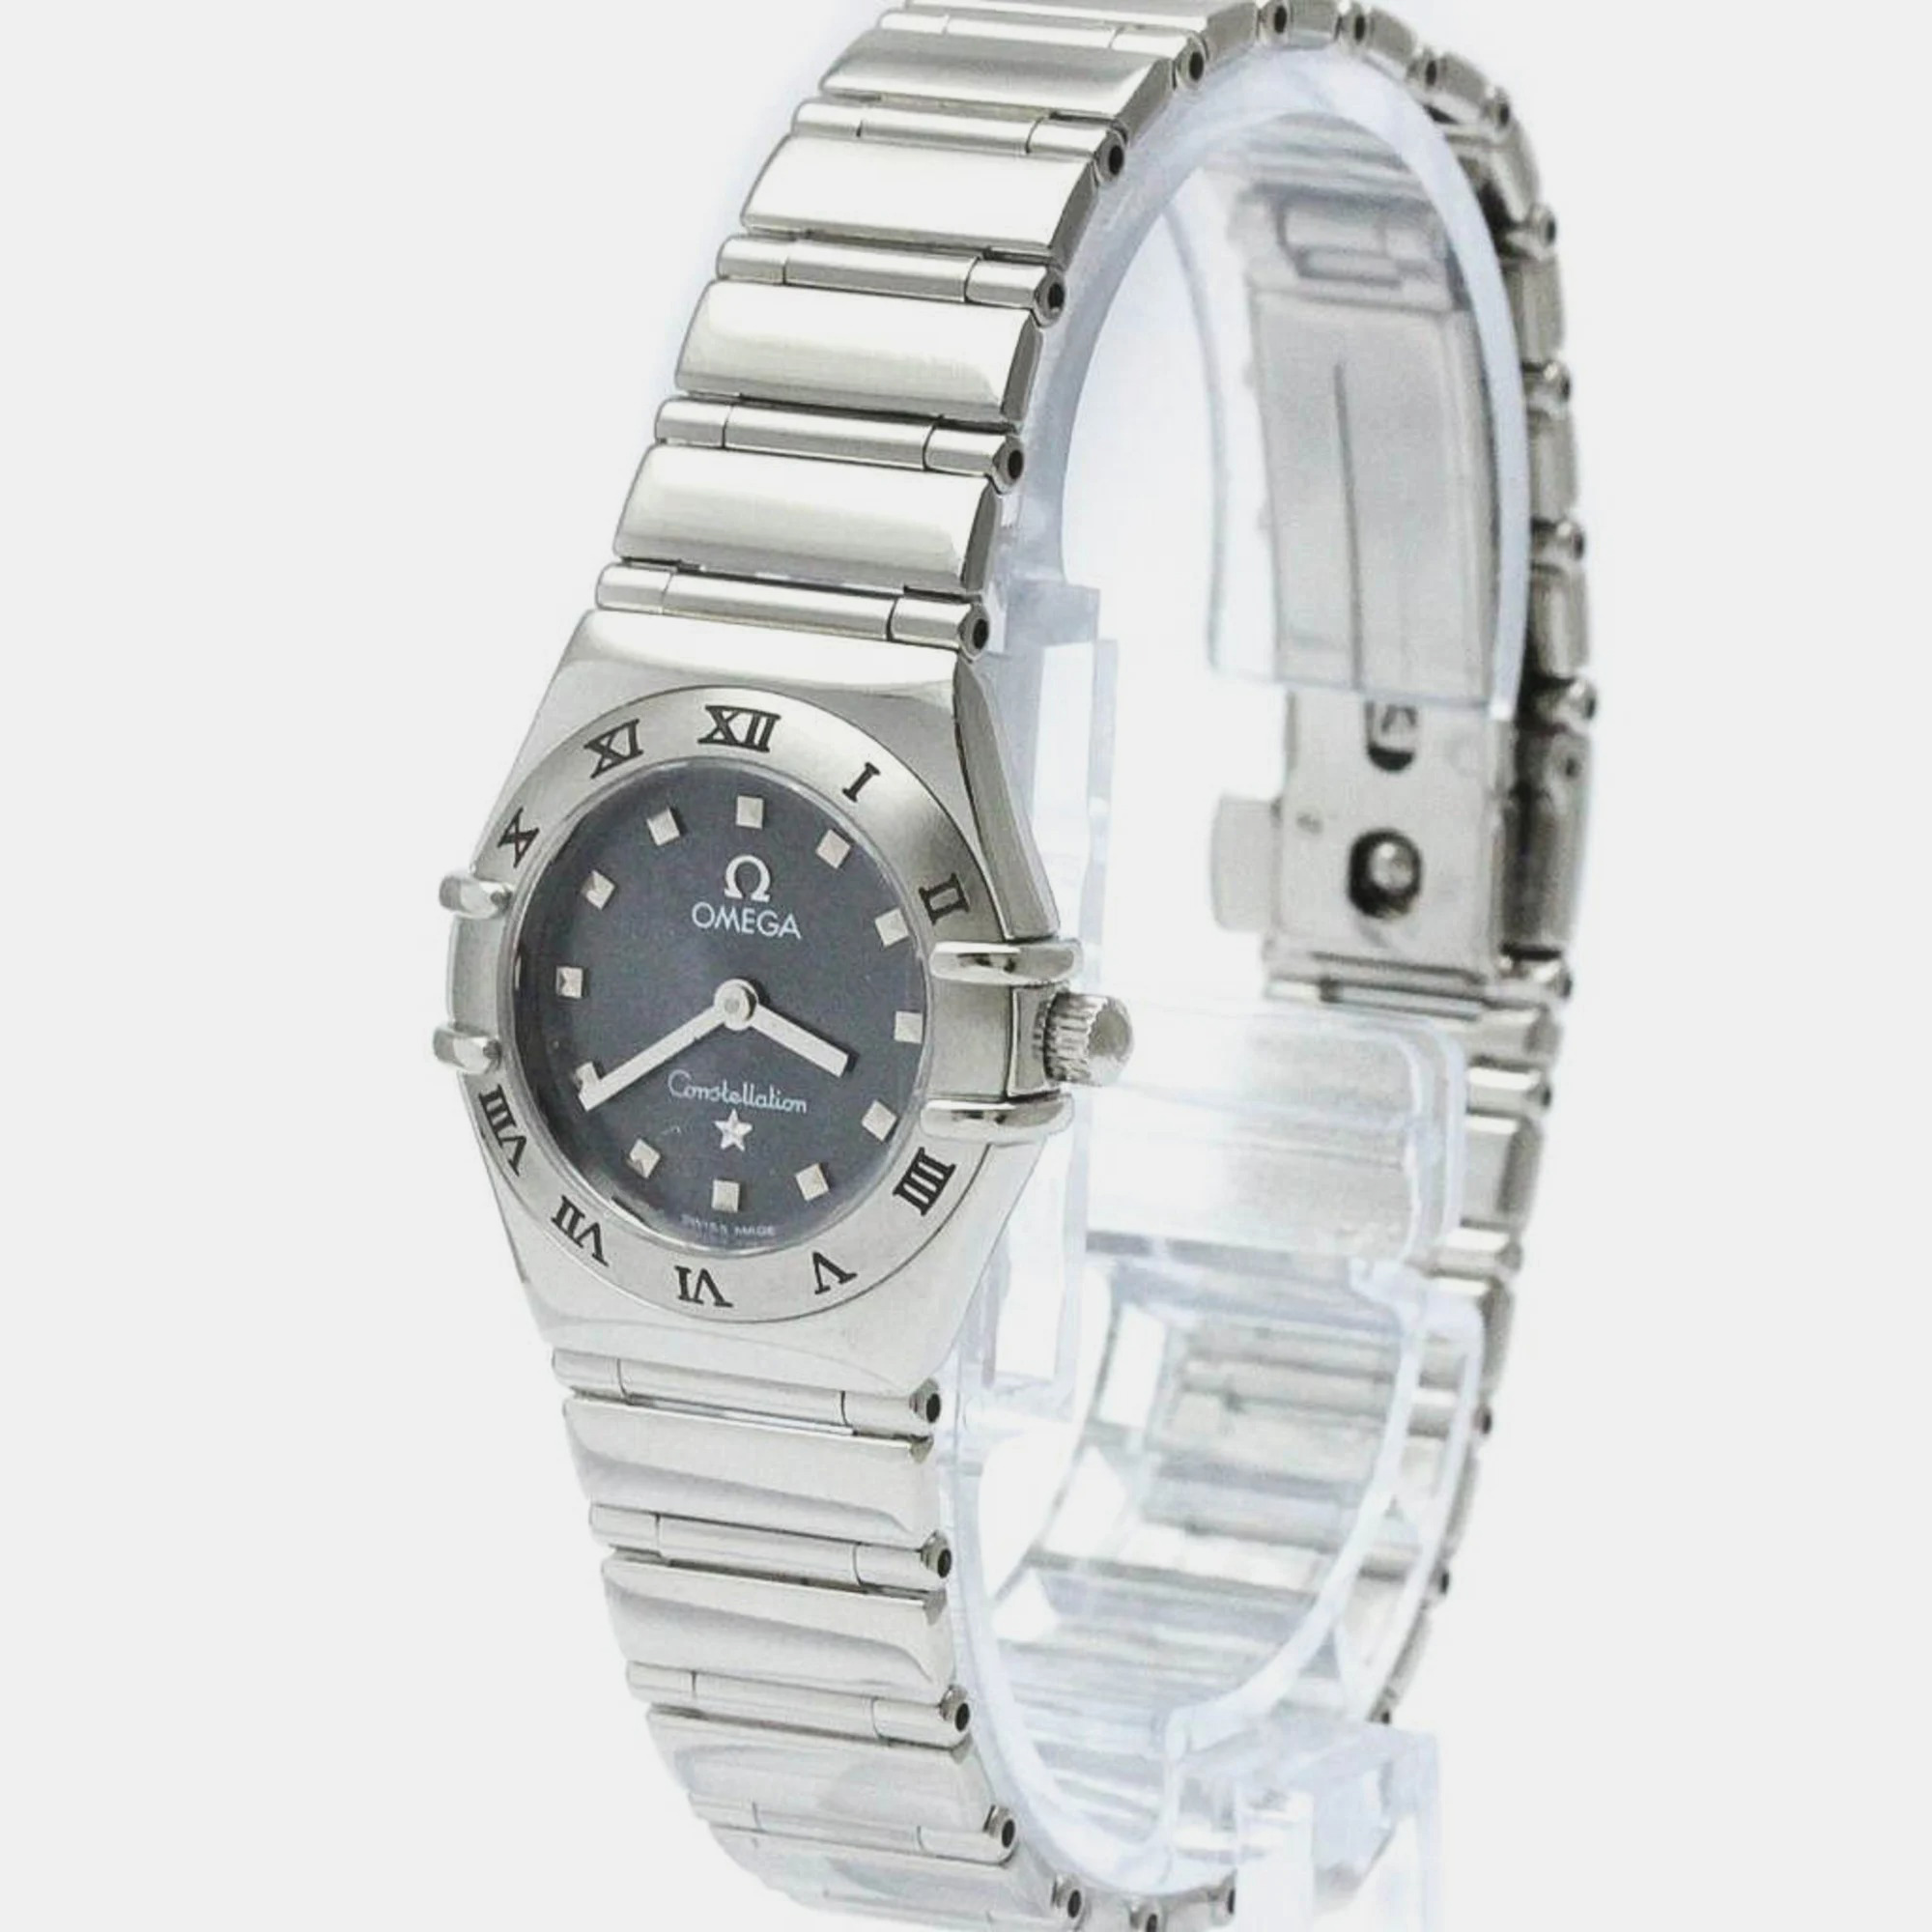 

Omega Grey Stainless Steel Constellation 1561.51 Quartz Women's Wristwatch 22 mm